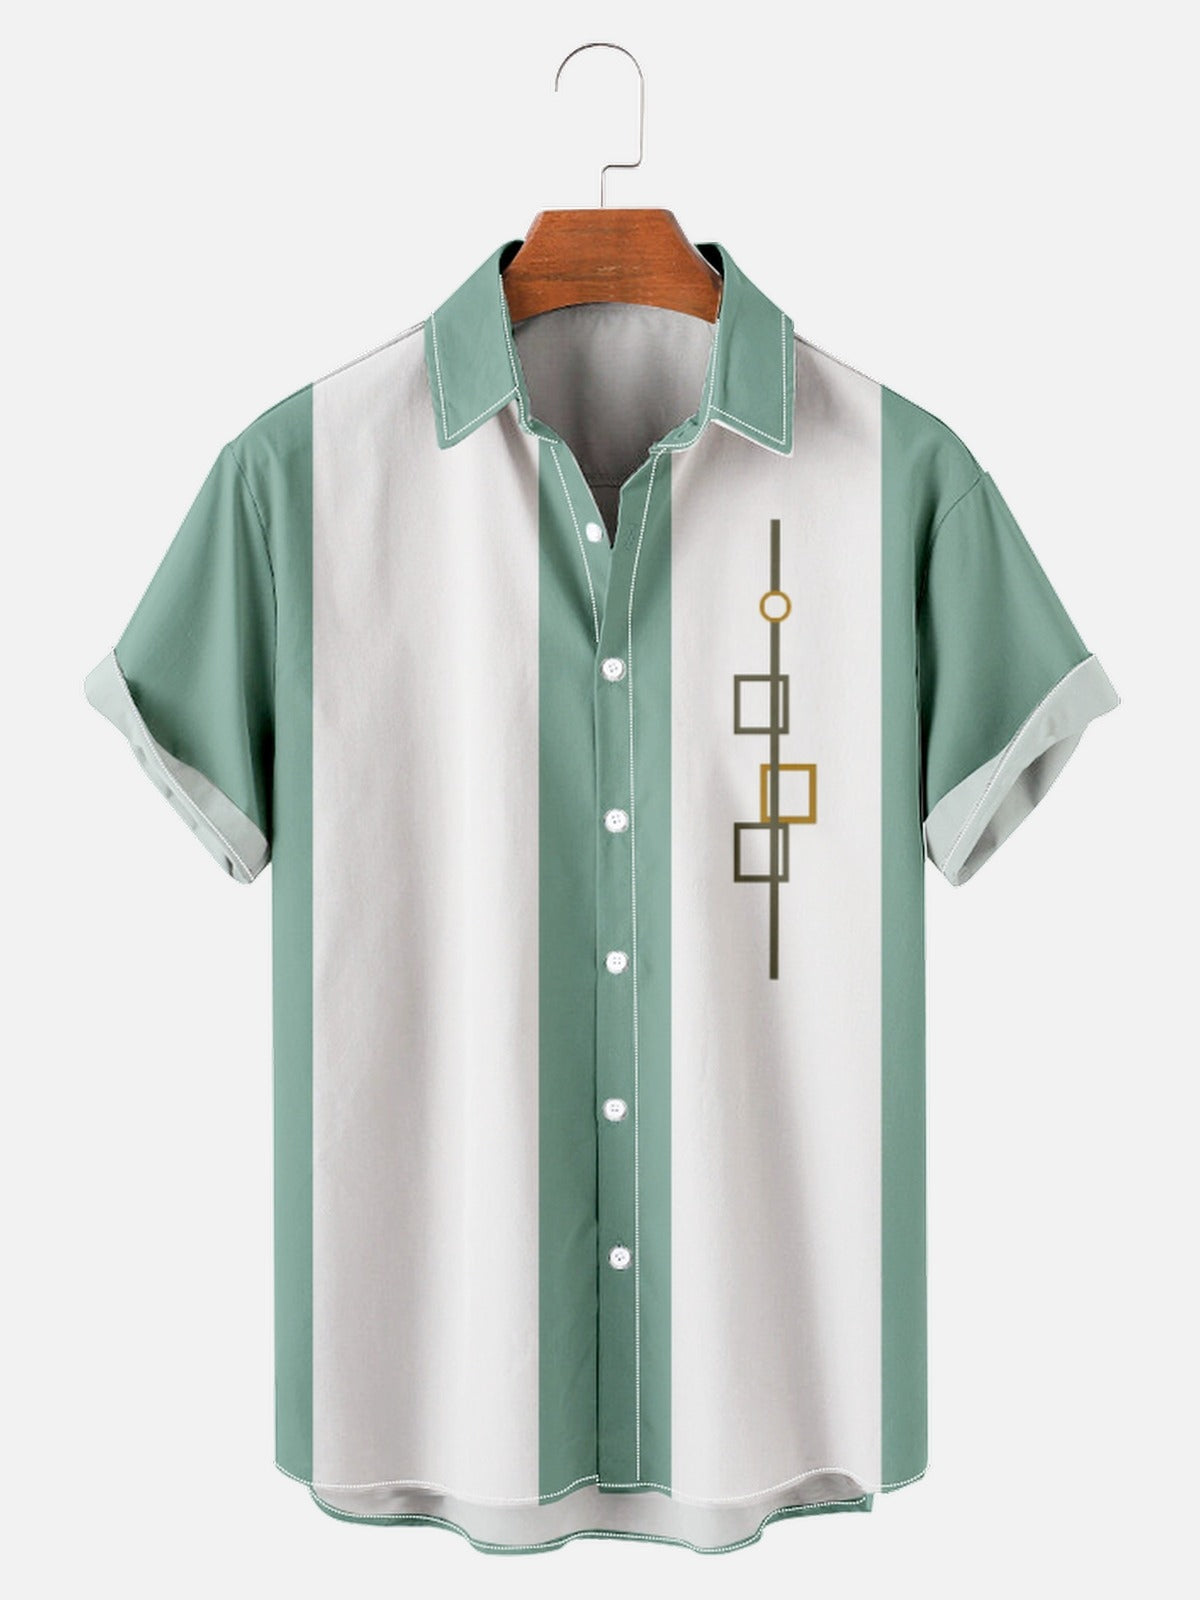 Men‘s Retro Camp Bowling Shirts 50s Vintage Cotton-Blend Blouse